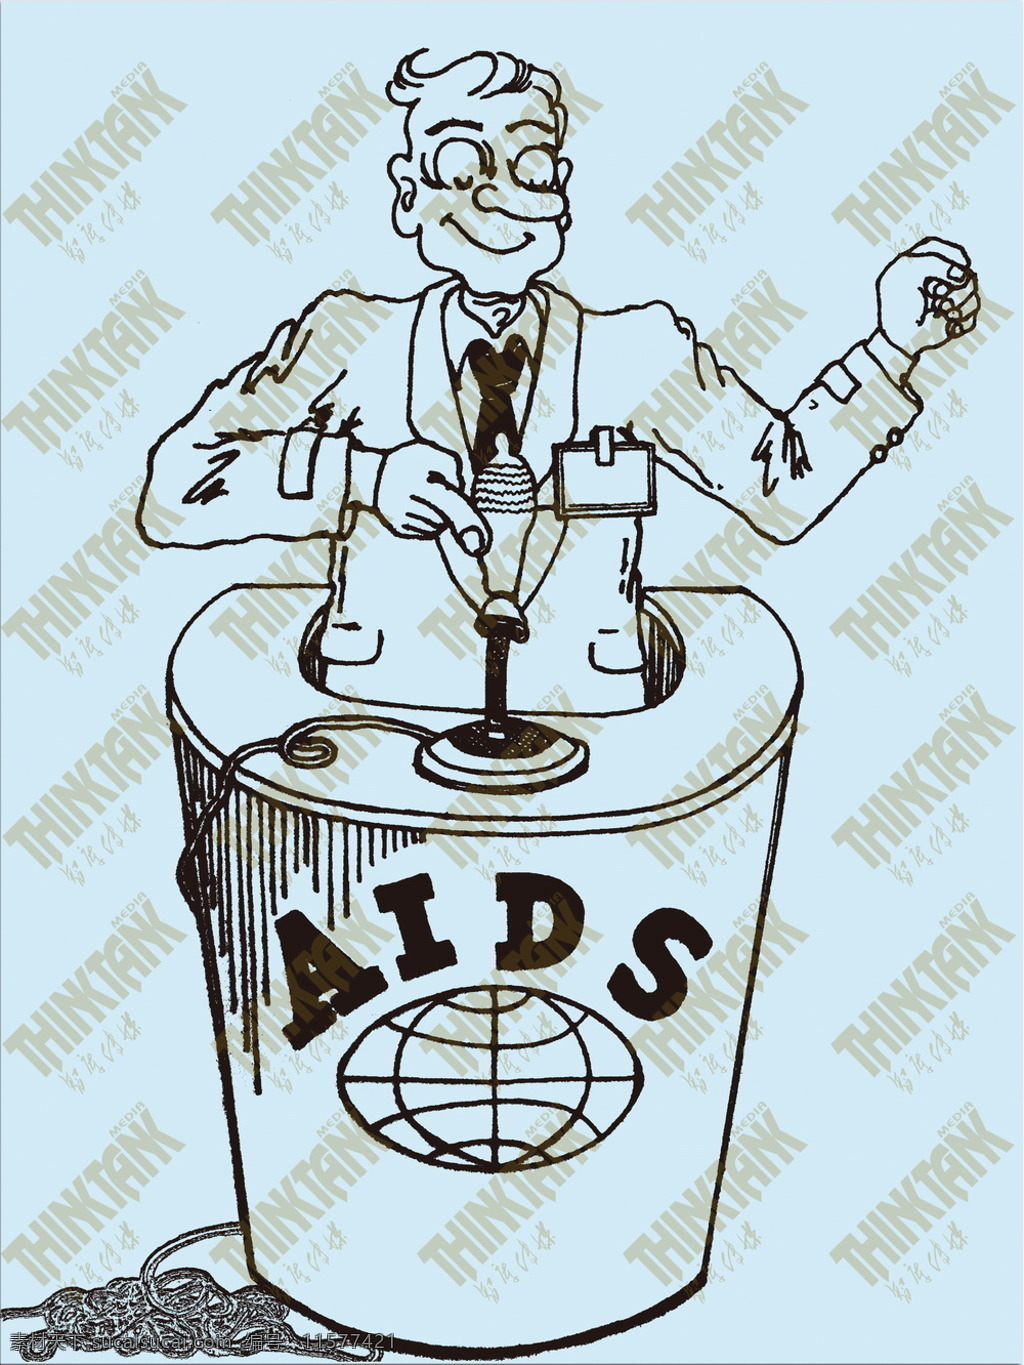 动漫动画 公益漫画 教育 演讲 预防艾滋病 展览 aids漫画 知识普及 遏制艾滋 履行承诺 aids 艾滋病漫画 展板 公益展板设计